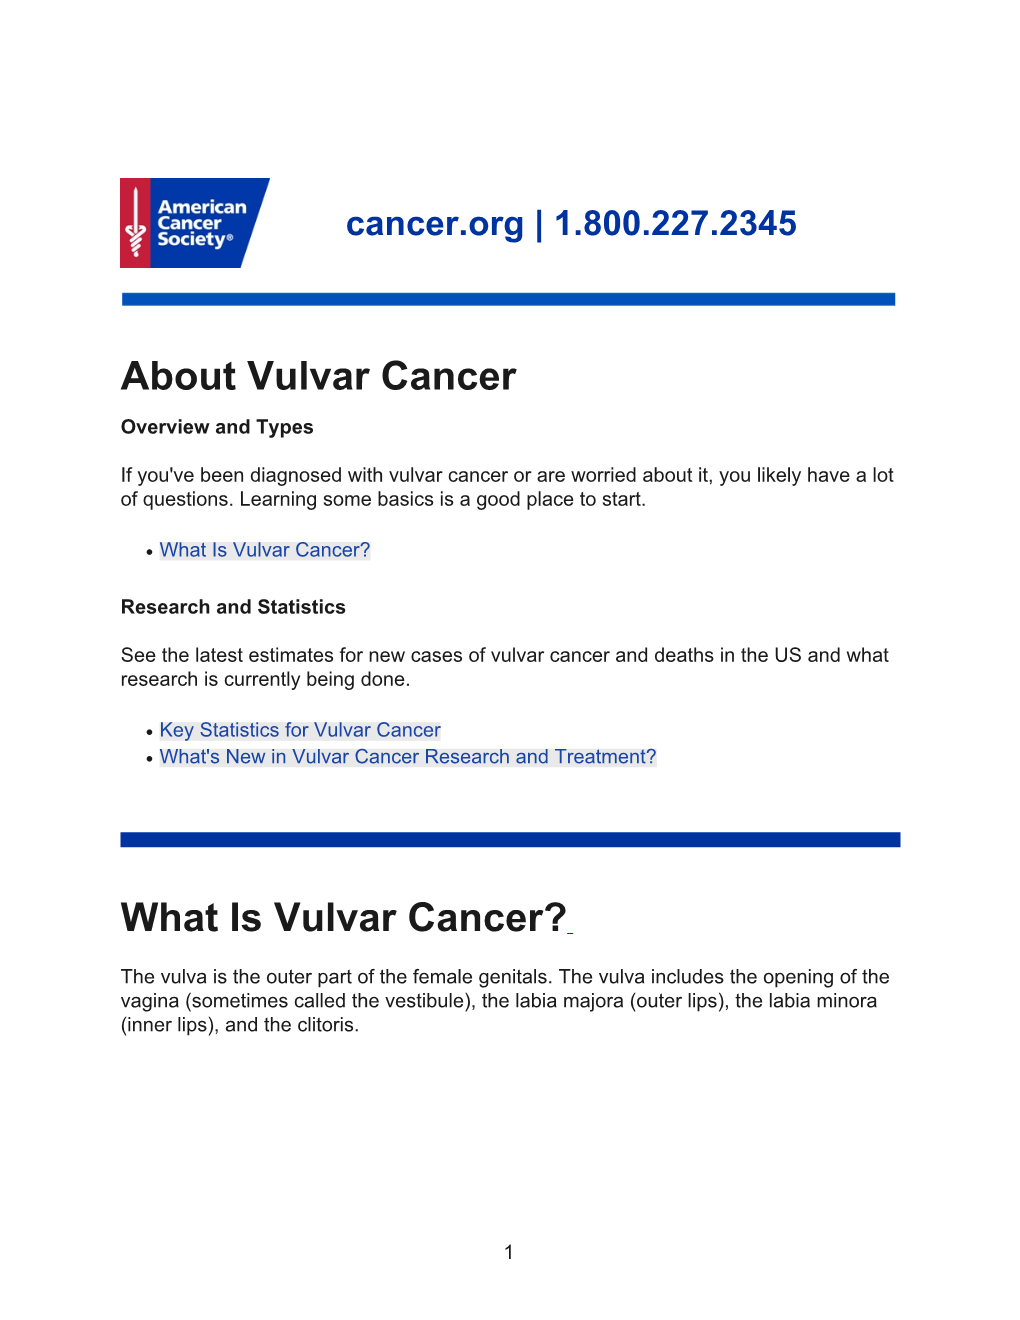 About Vulvar Cancer What Is Vulvar Cancer?